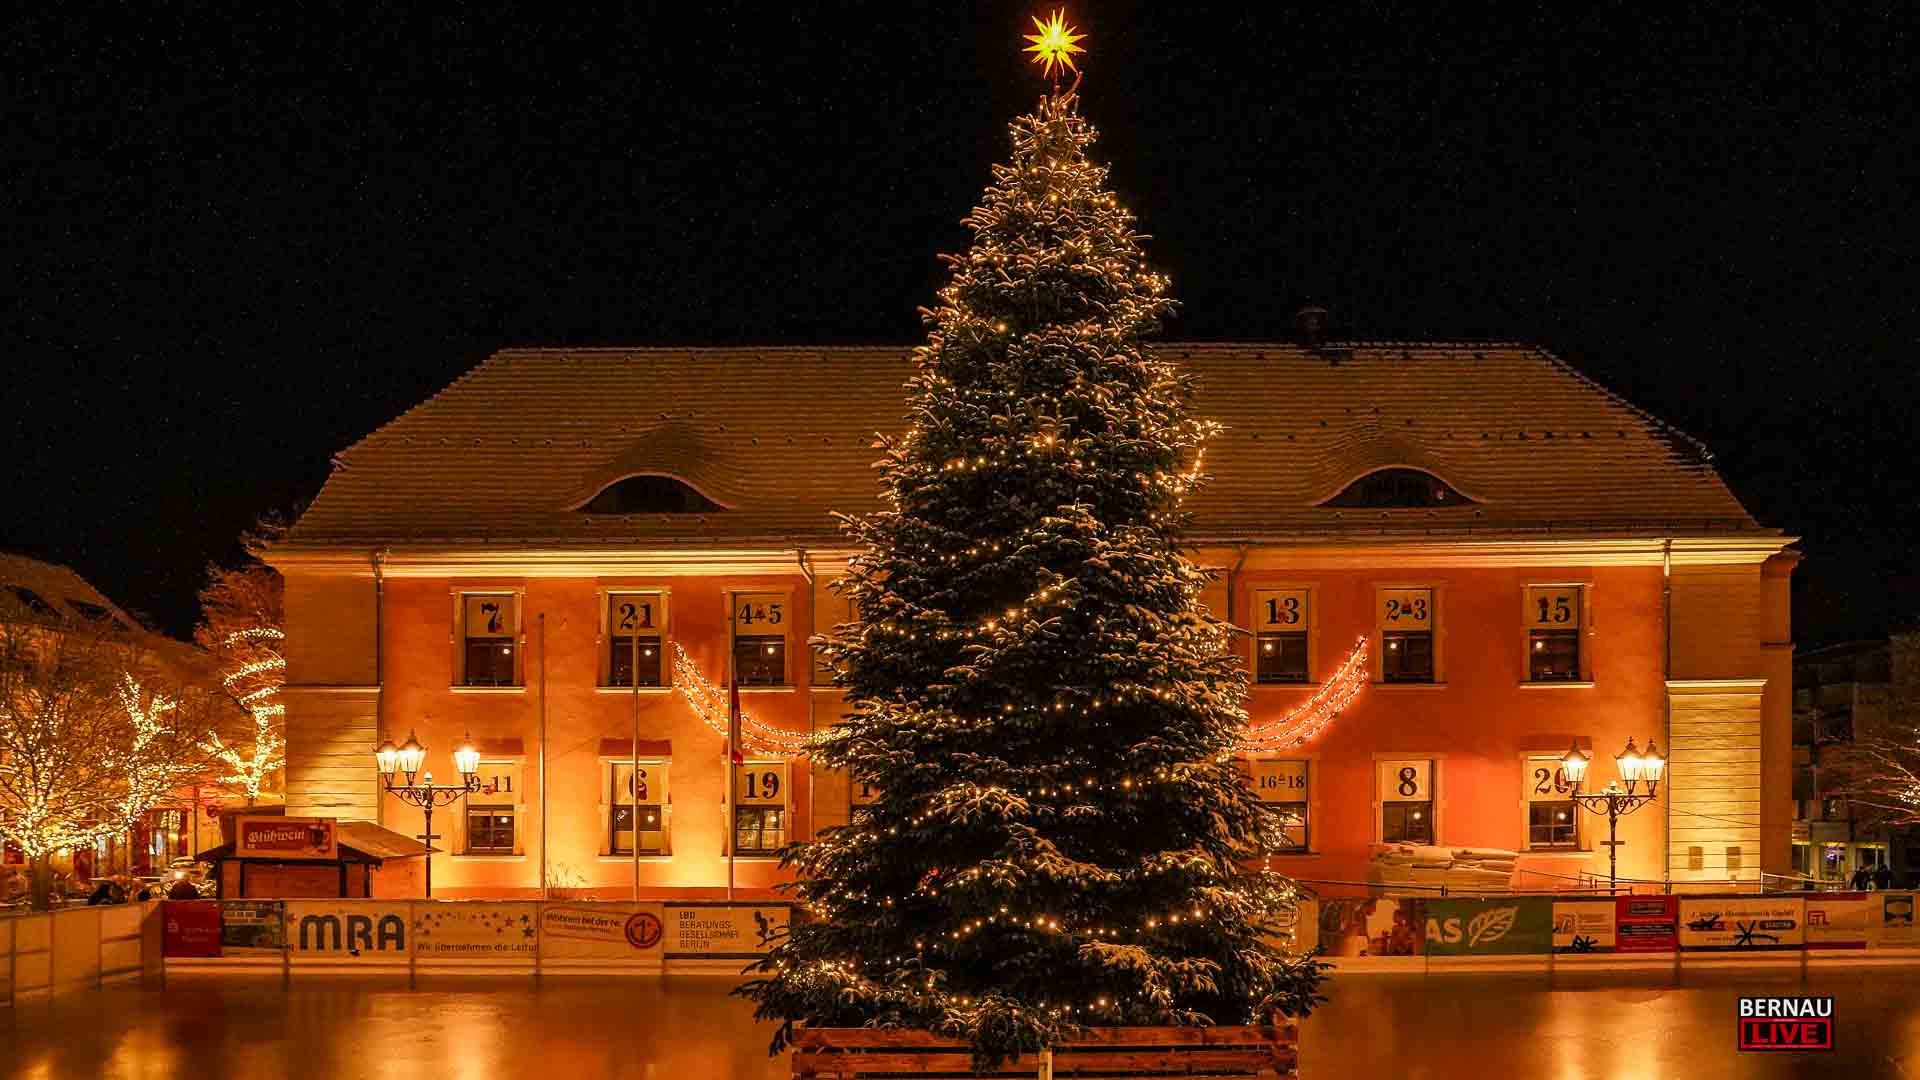 Bernau: Weihnachtsbaum und Weihnachtsbeleuchtung eingeschalten